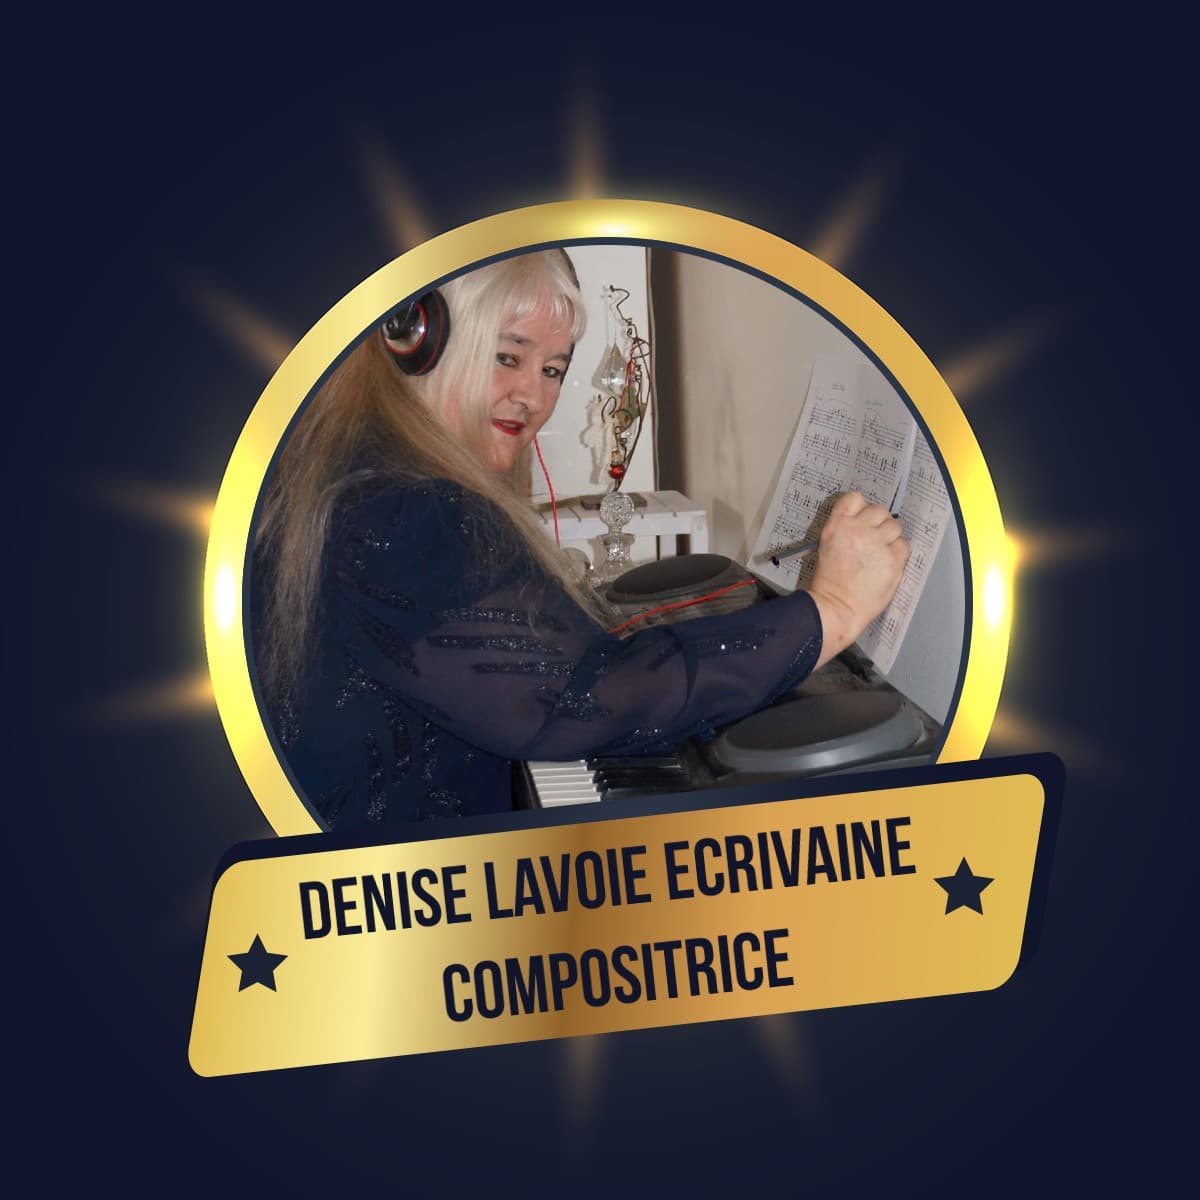 Edimusique - Denise Lavoie écrivaine compositrice